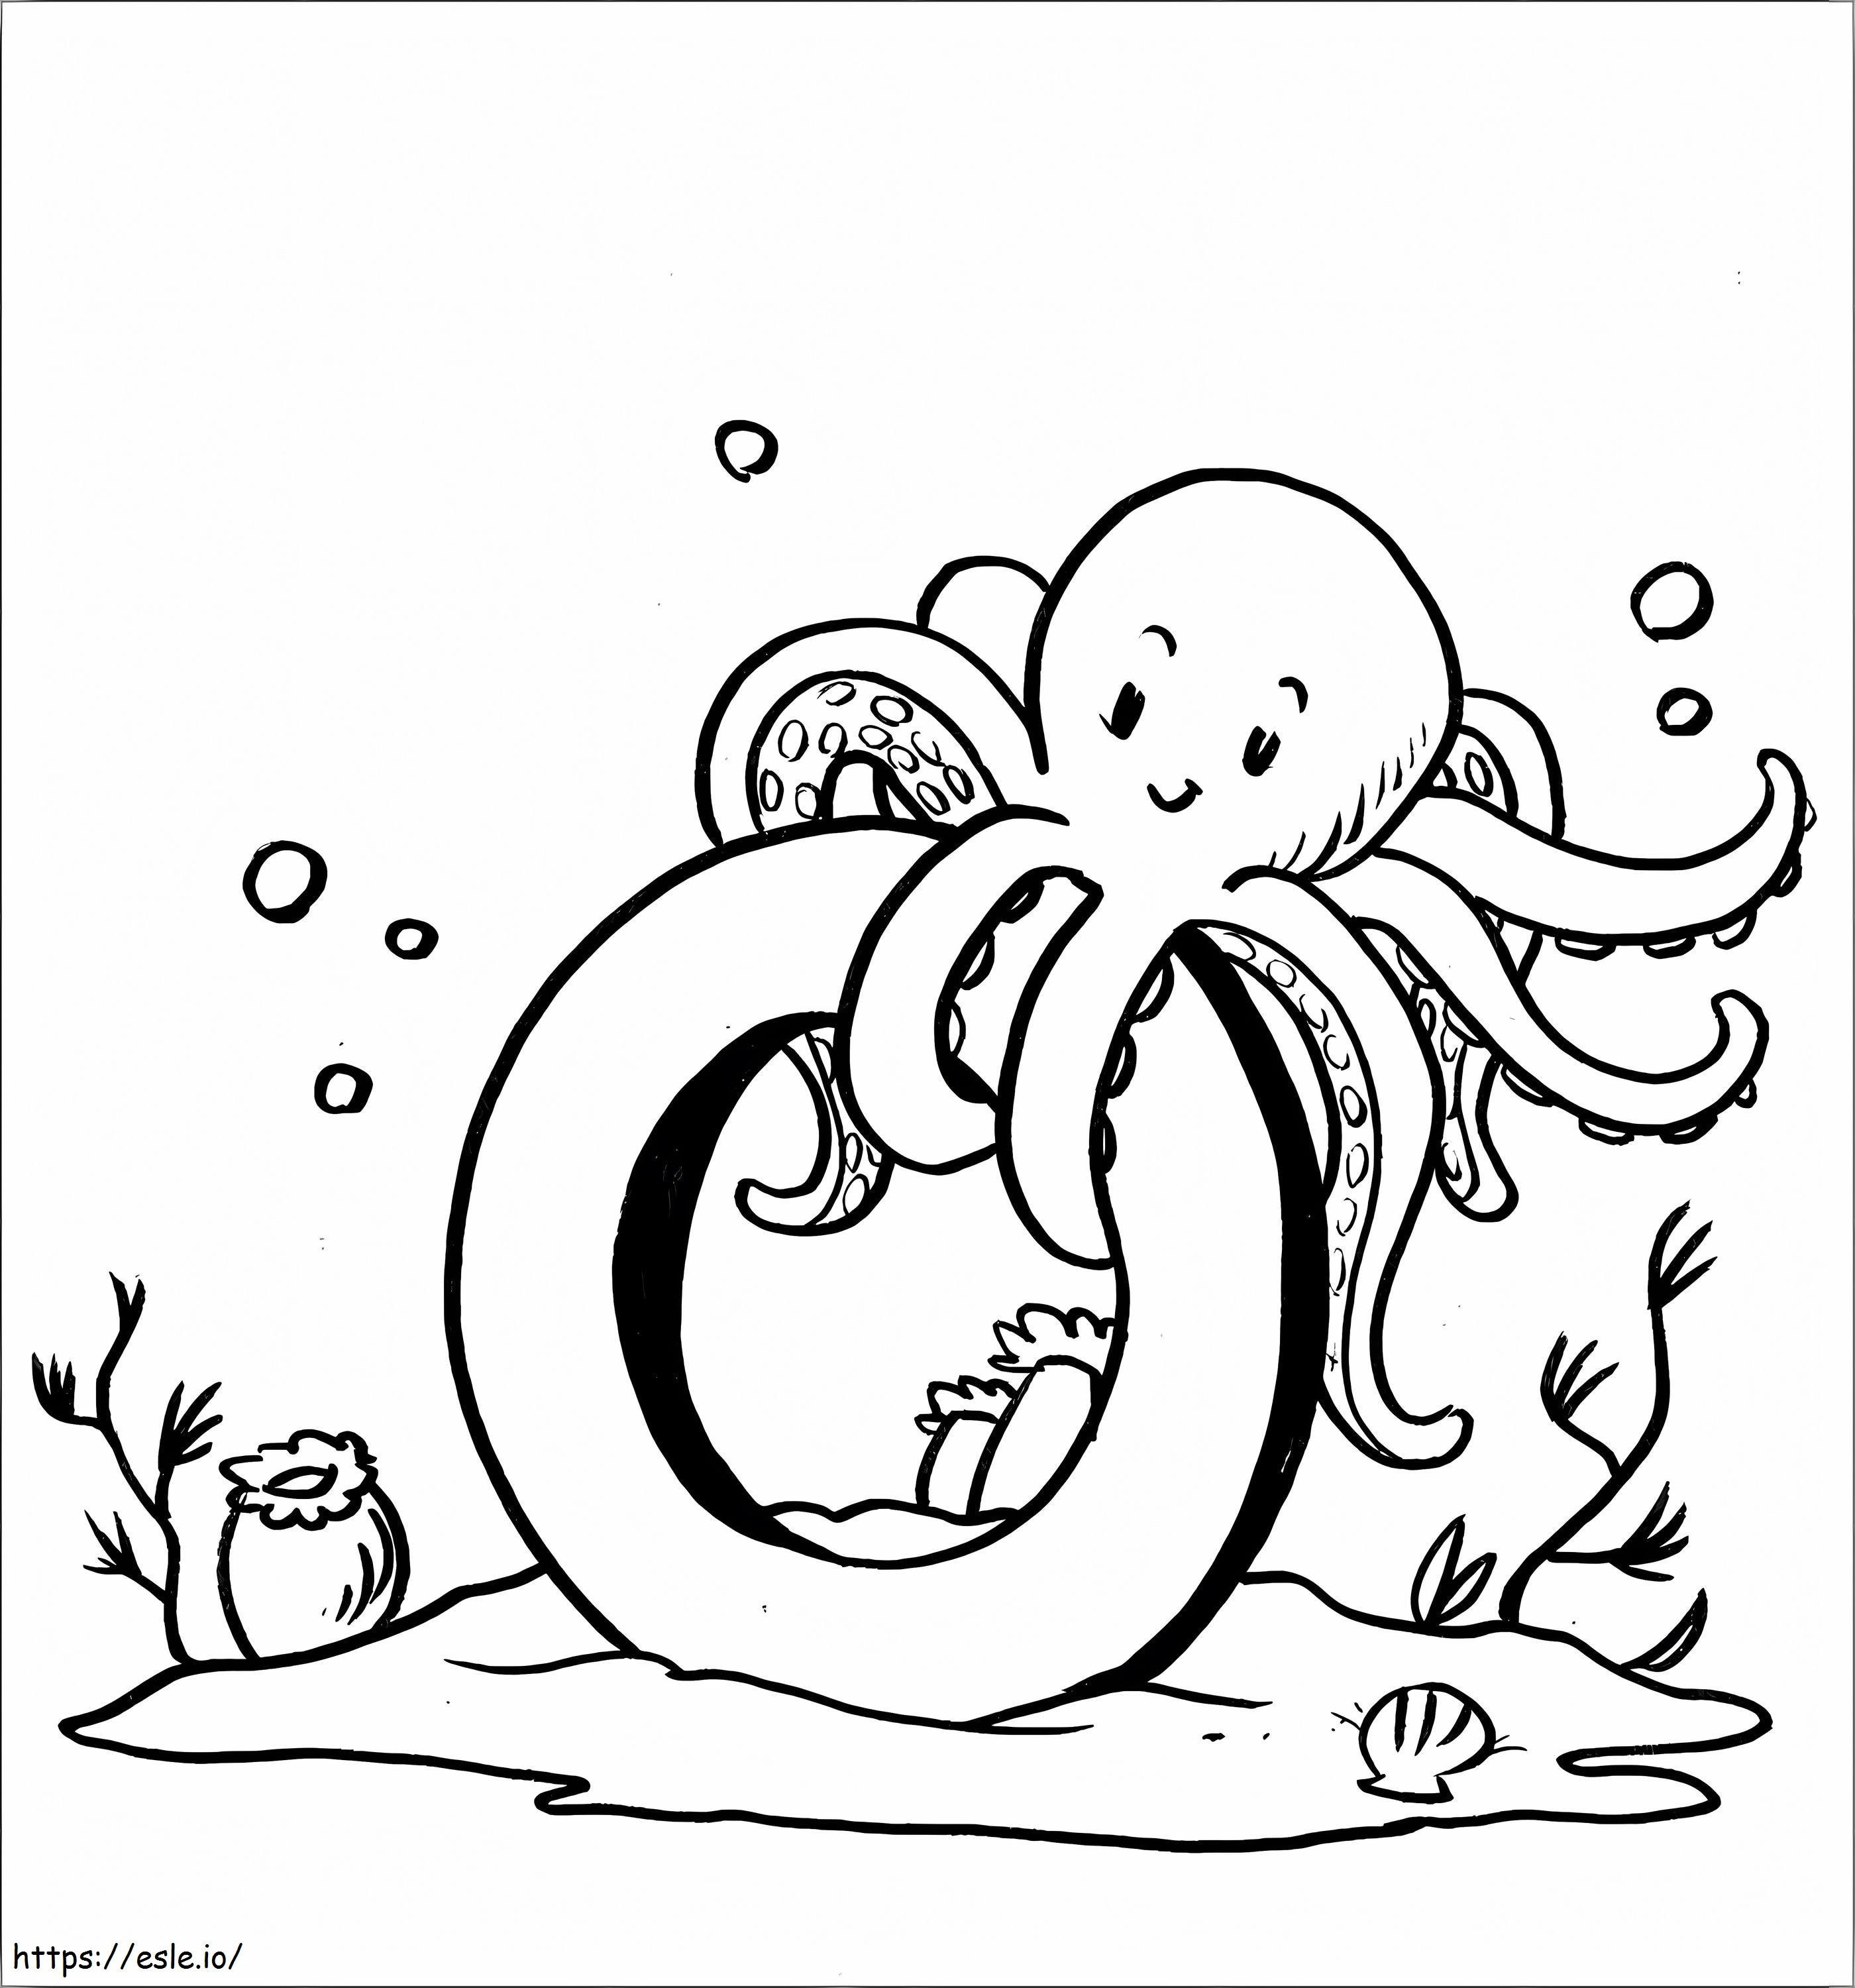 Octopus met de letter O kleurplaat kleurplaat